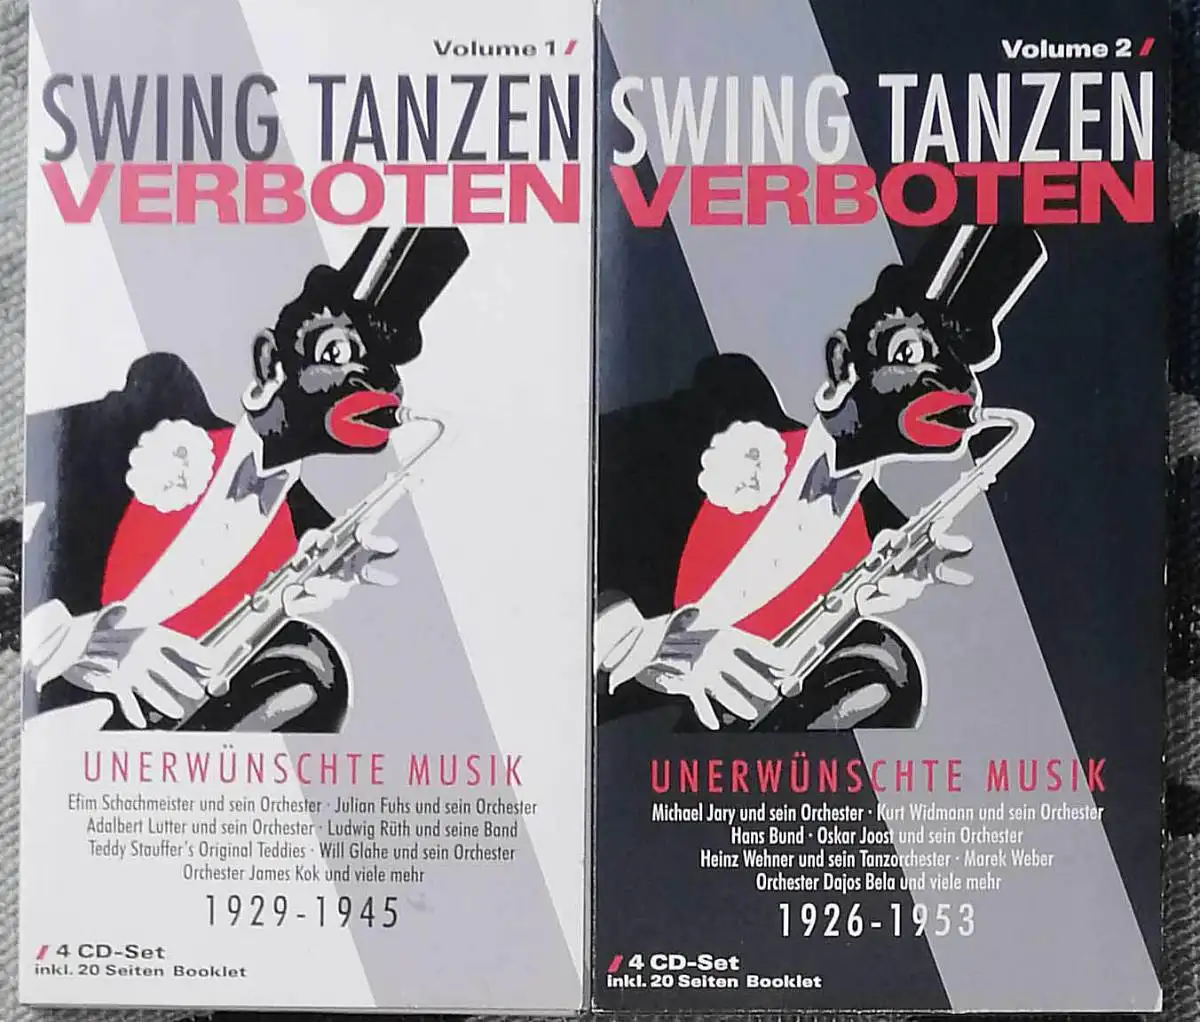 Swing tanzen verboten;  Vol. 1 und 2: 1929 - 1946 / 1926 - 1953.   KOMPLETT !. 